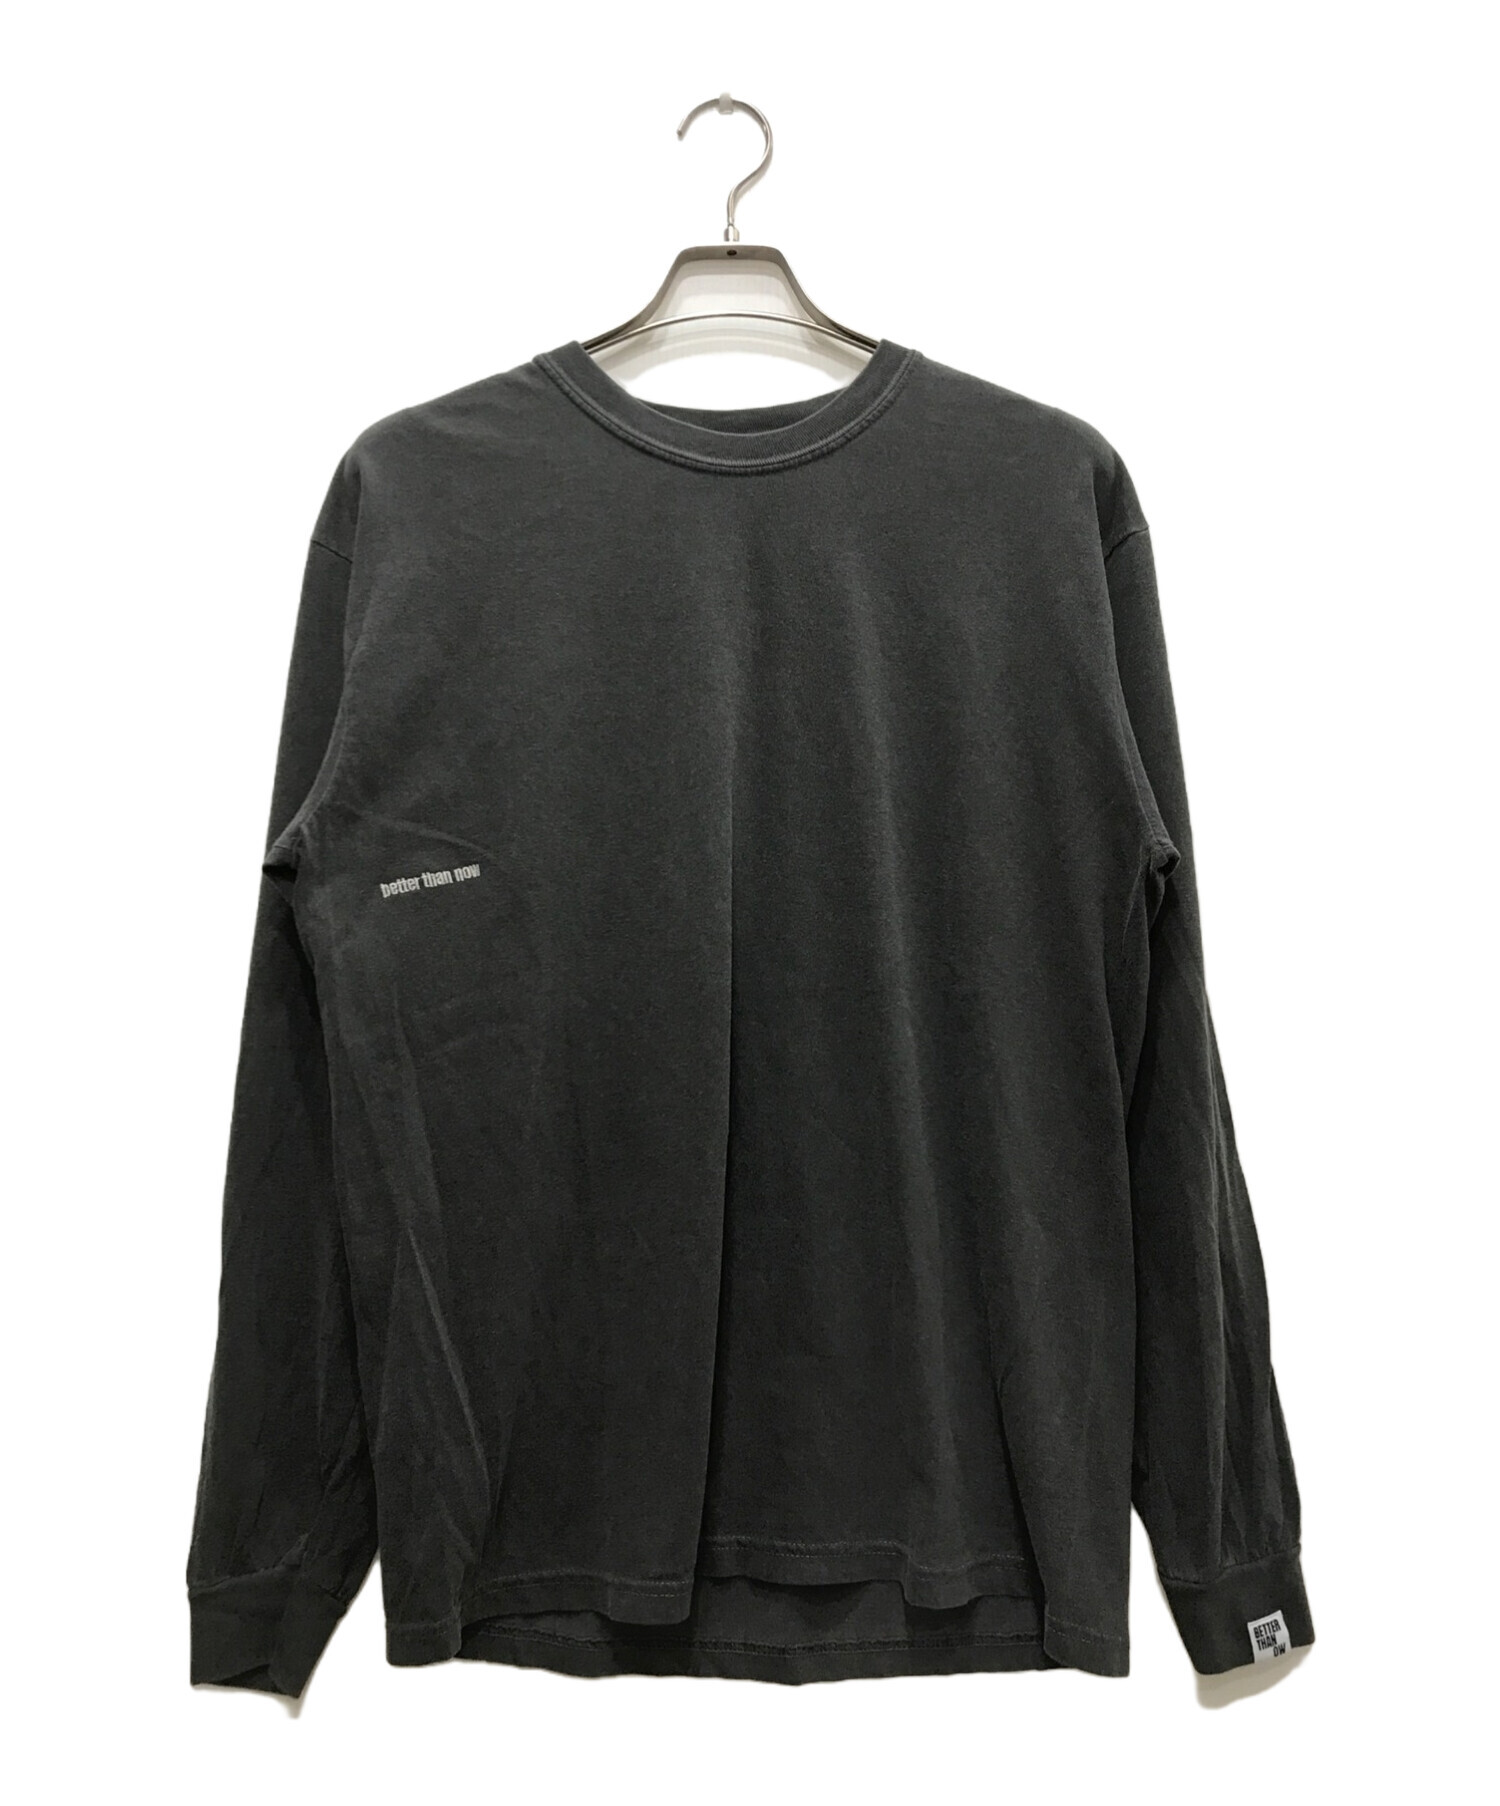 DEUXIEME CLASSE (ドゥーズィエム クラス) BTN Layered Tシャツ グレー サイズ:F 未使用品